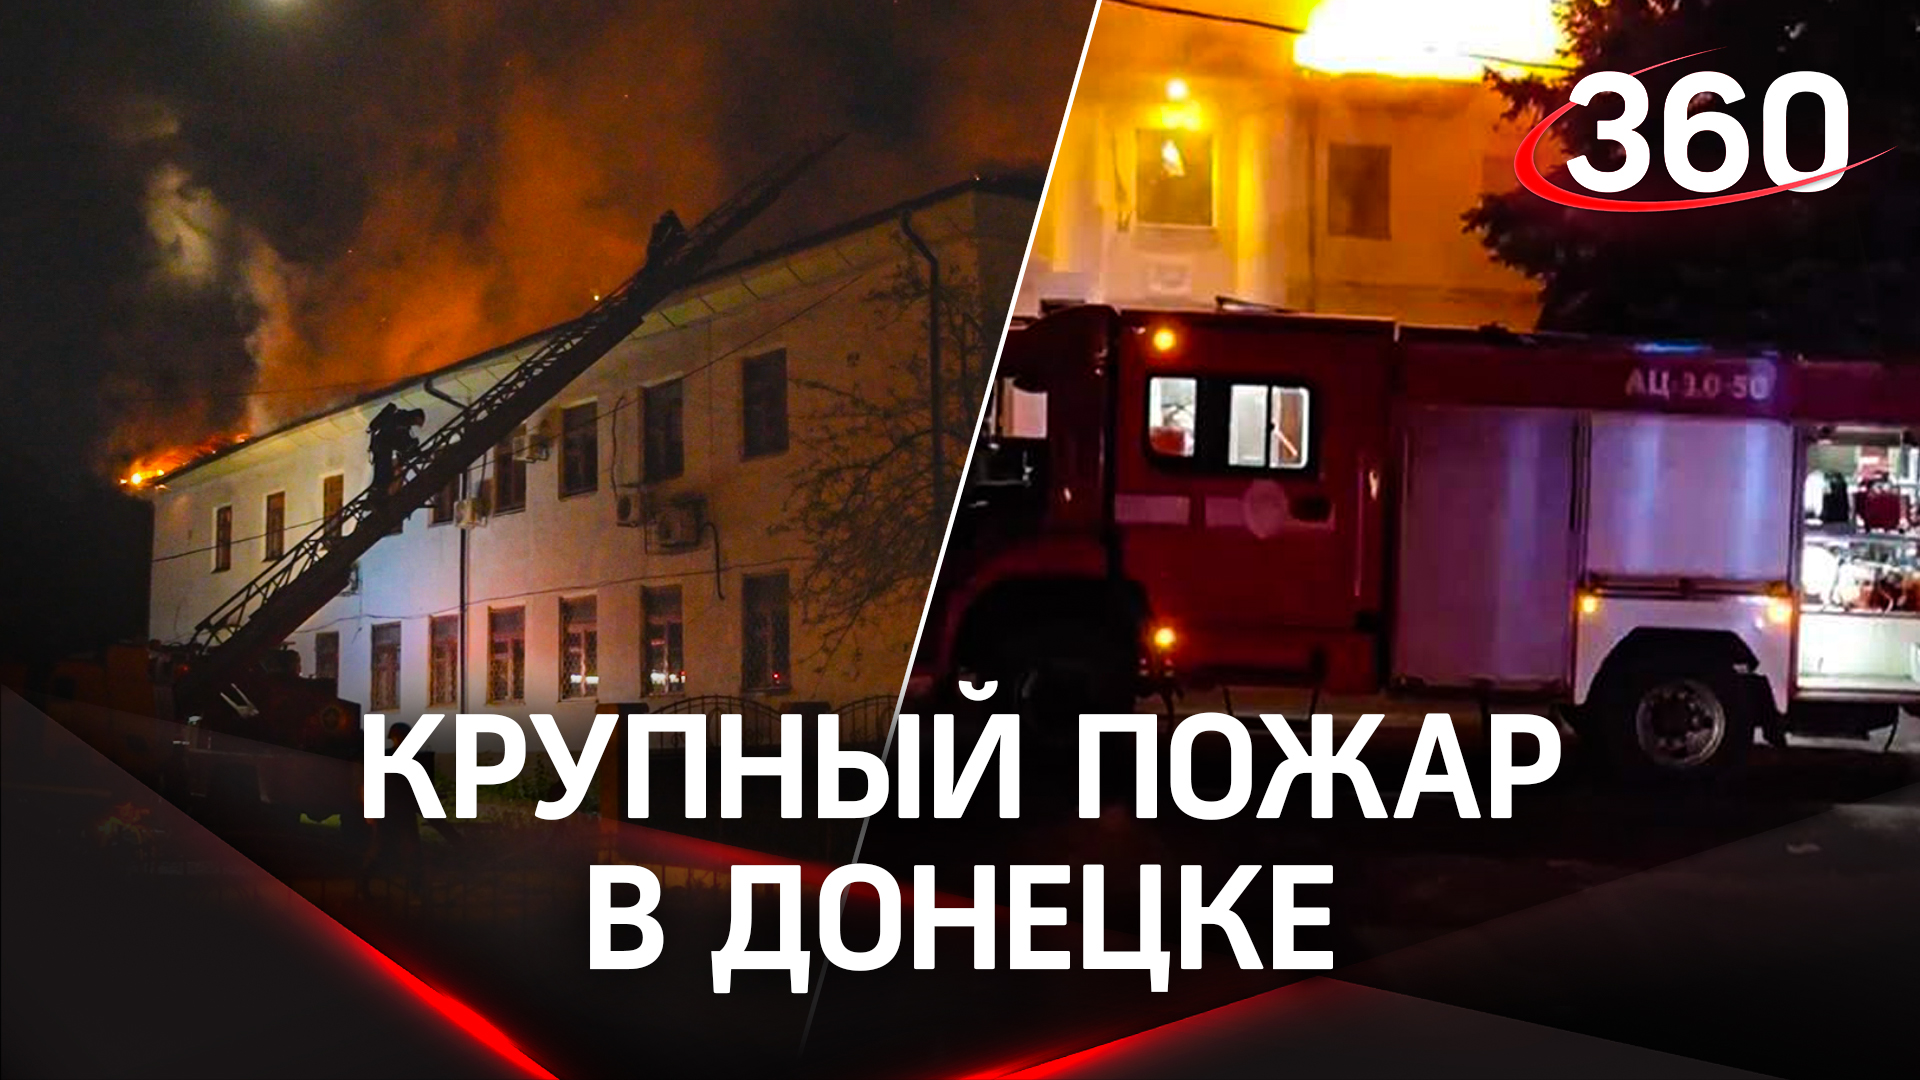 Пожар в университете в Донецке: огнем полностью уничтожена кровля и перекрытия